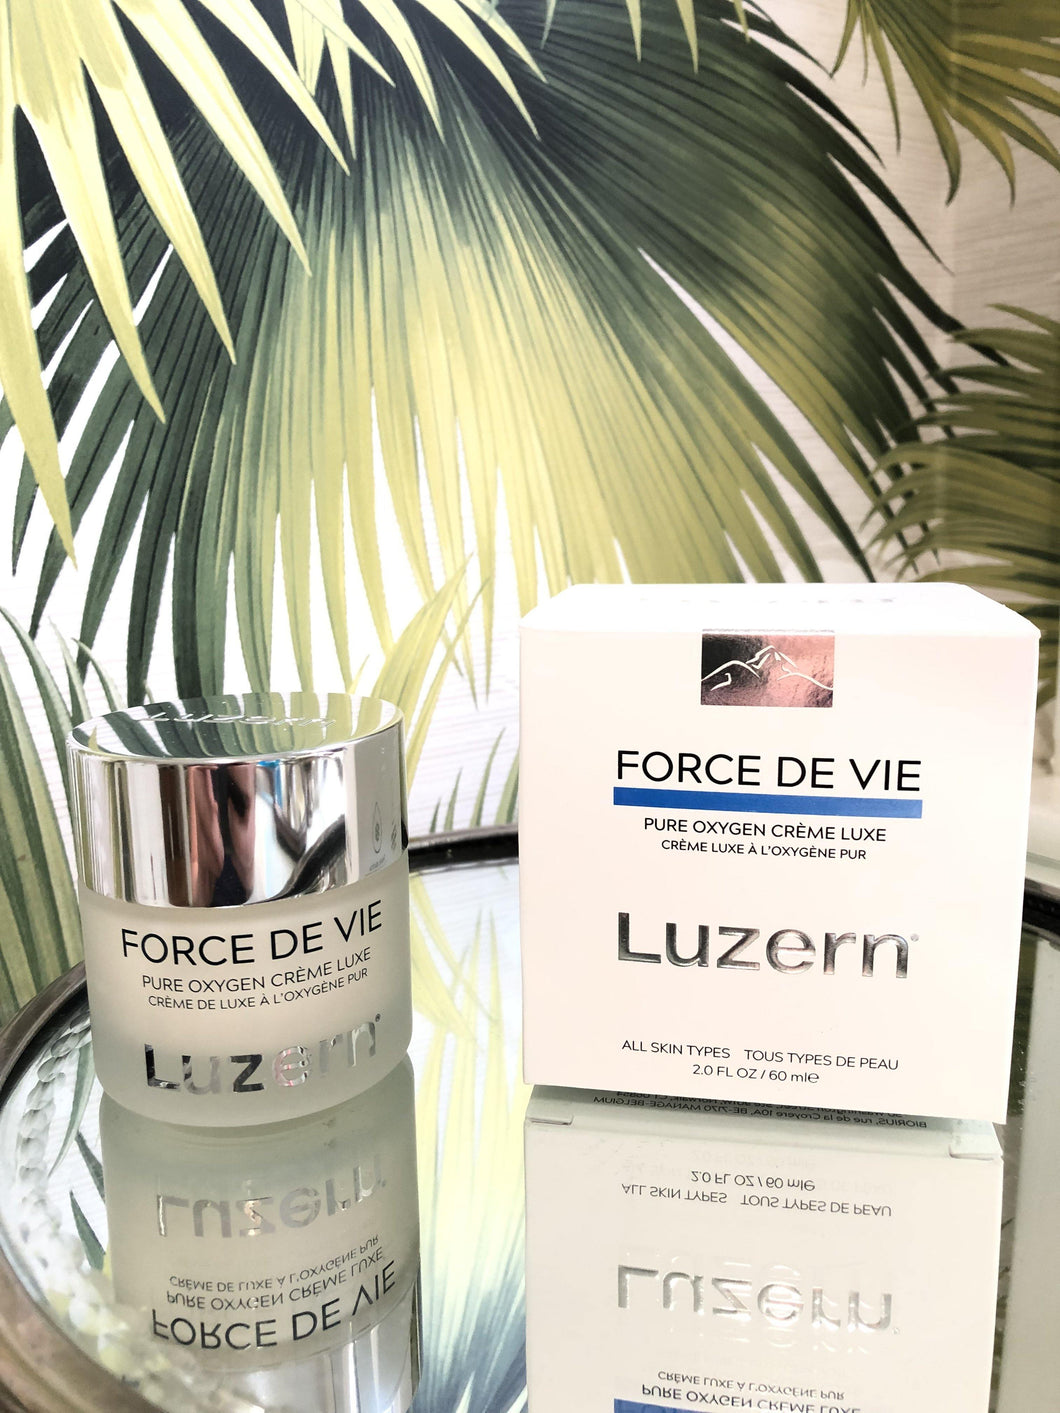 Luzern Force De Vie Creme Luxe - Carasoin